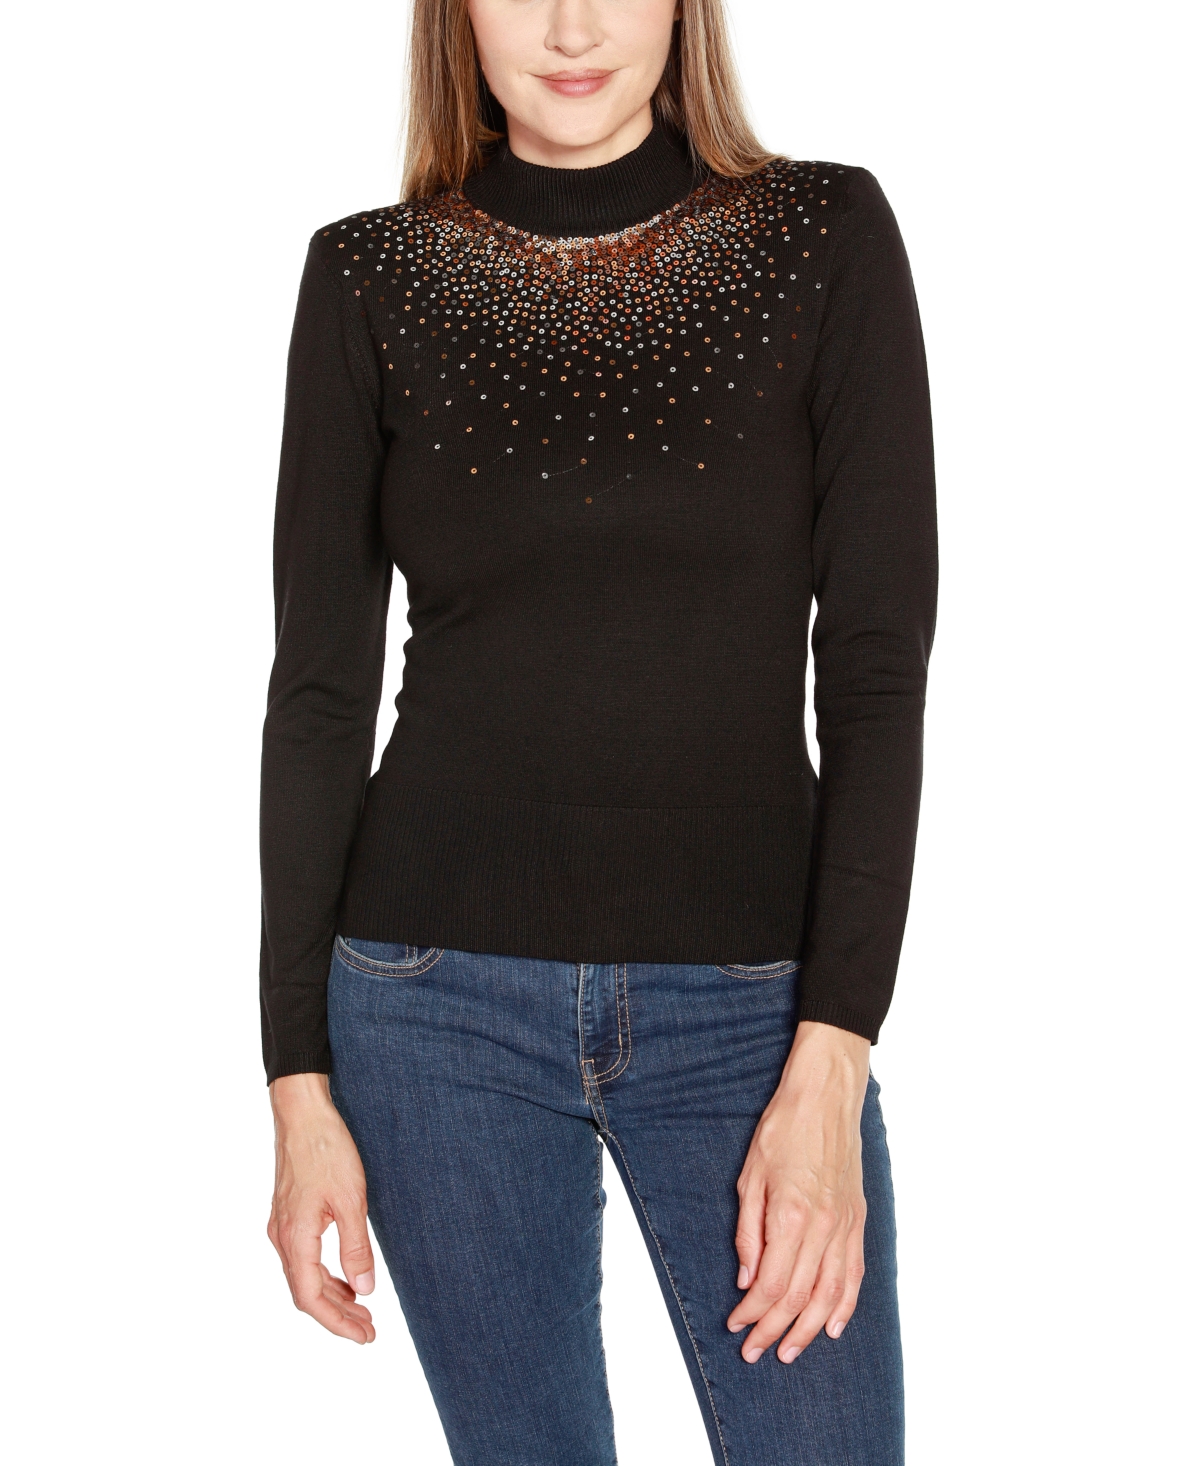 Women's Sequin Embellished Mock Neck Sweater - Black